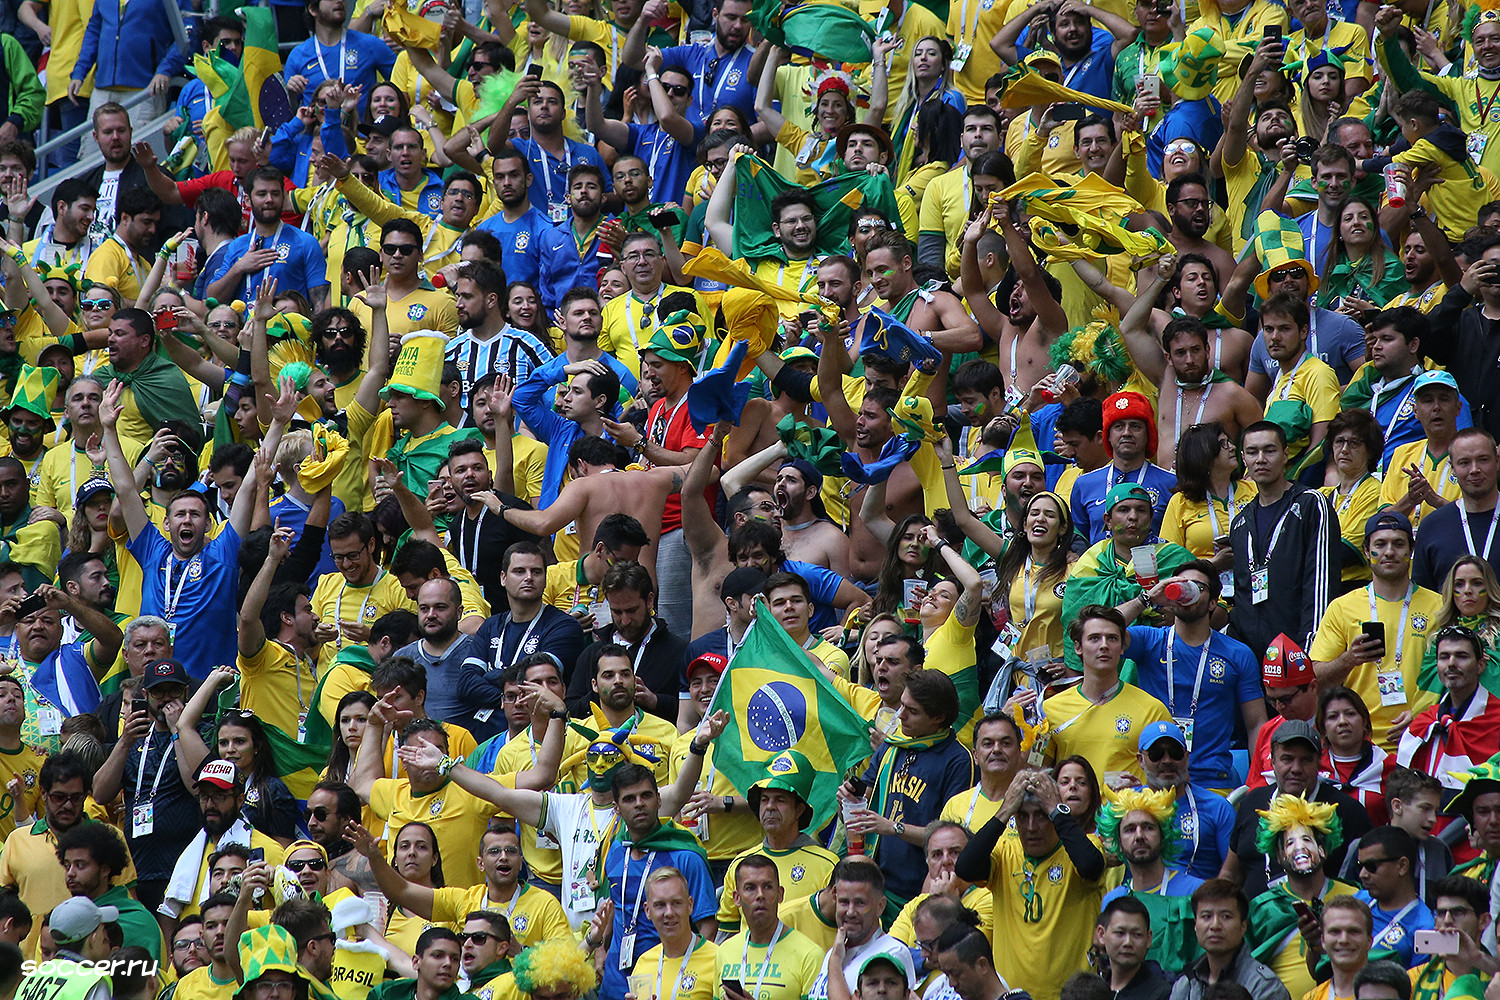 File:Brazil fans - Wikimedia Commons